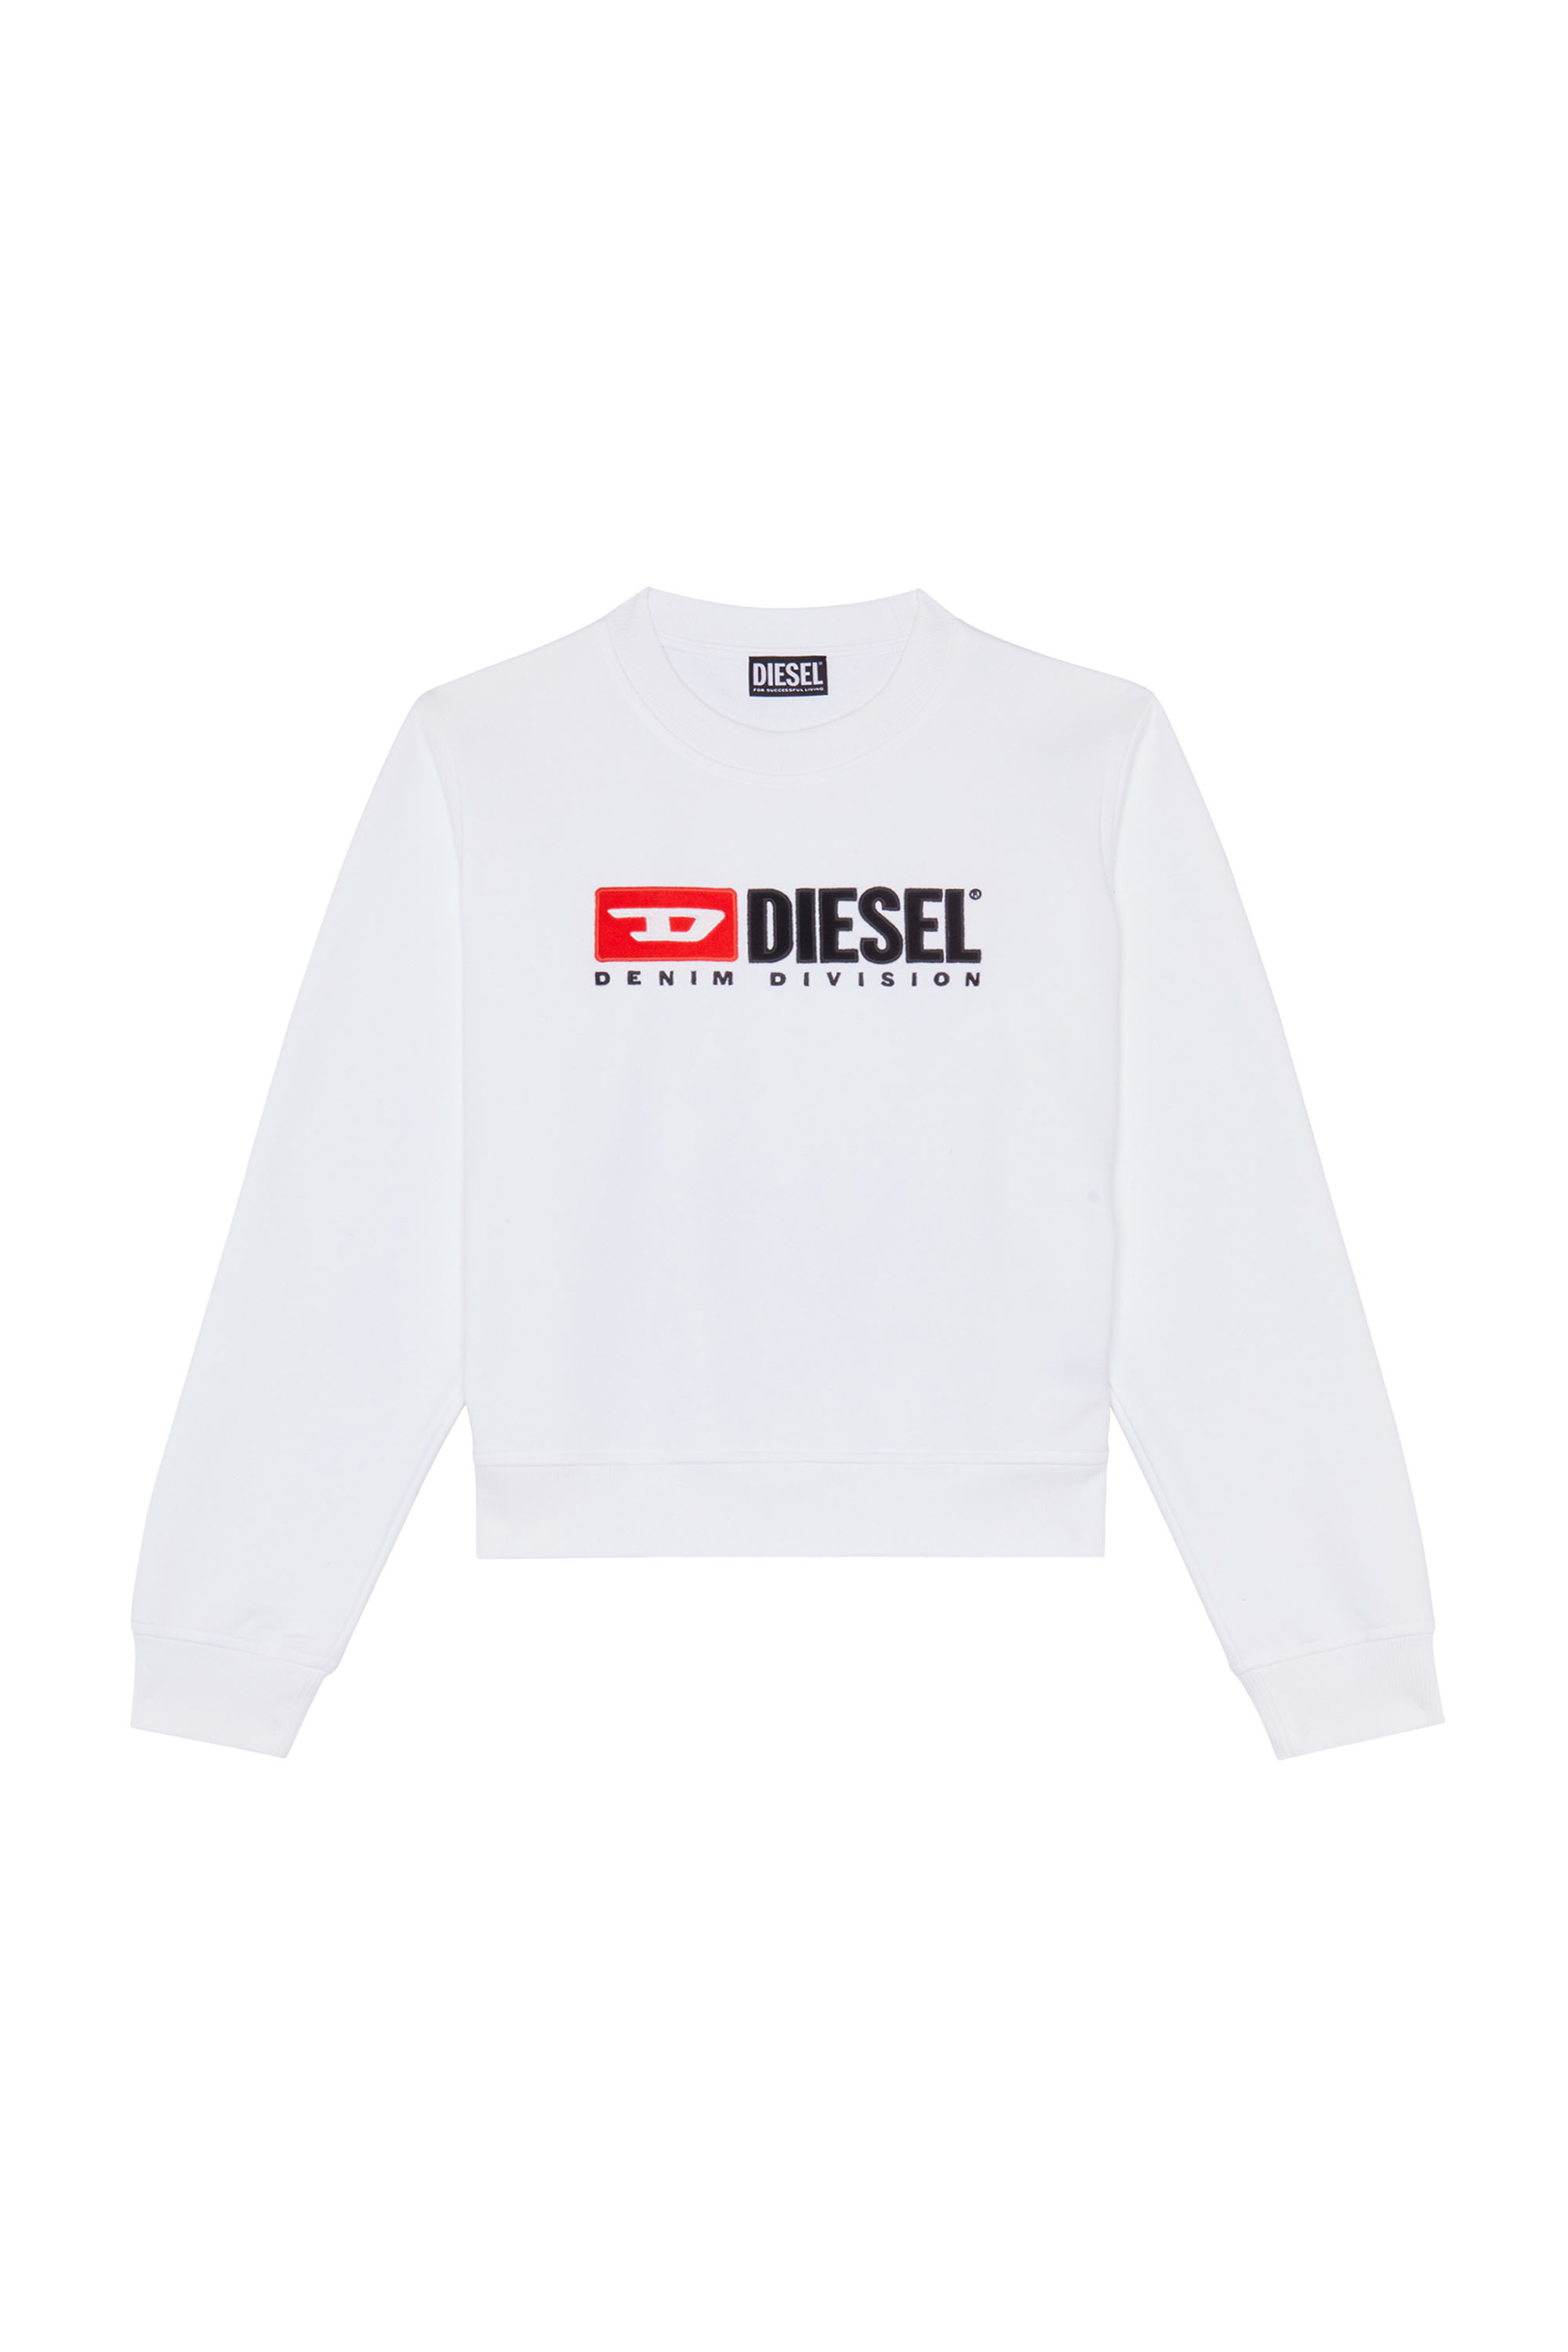 Diesel - F-REGGY-DIV, White - Image 6